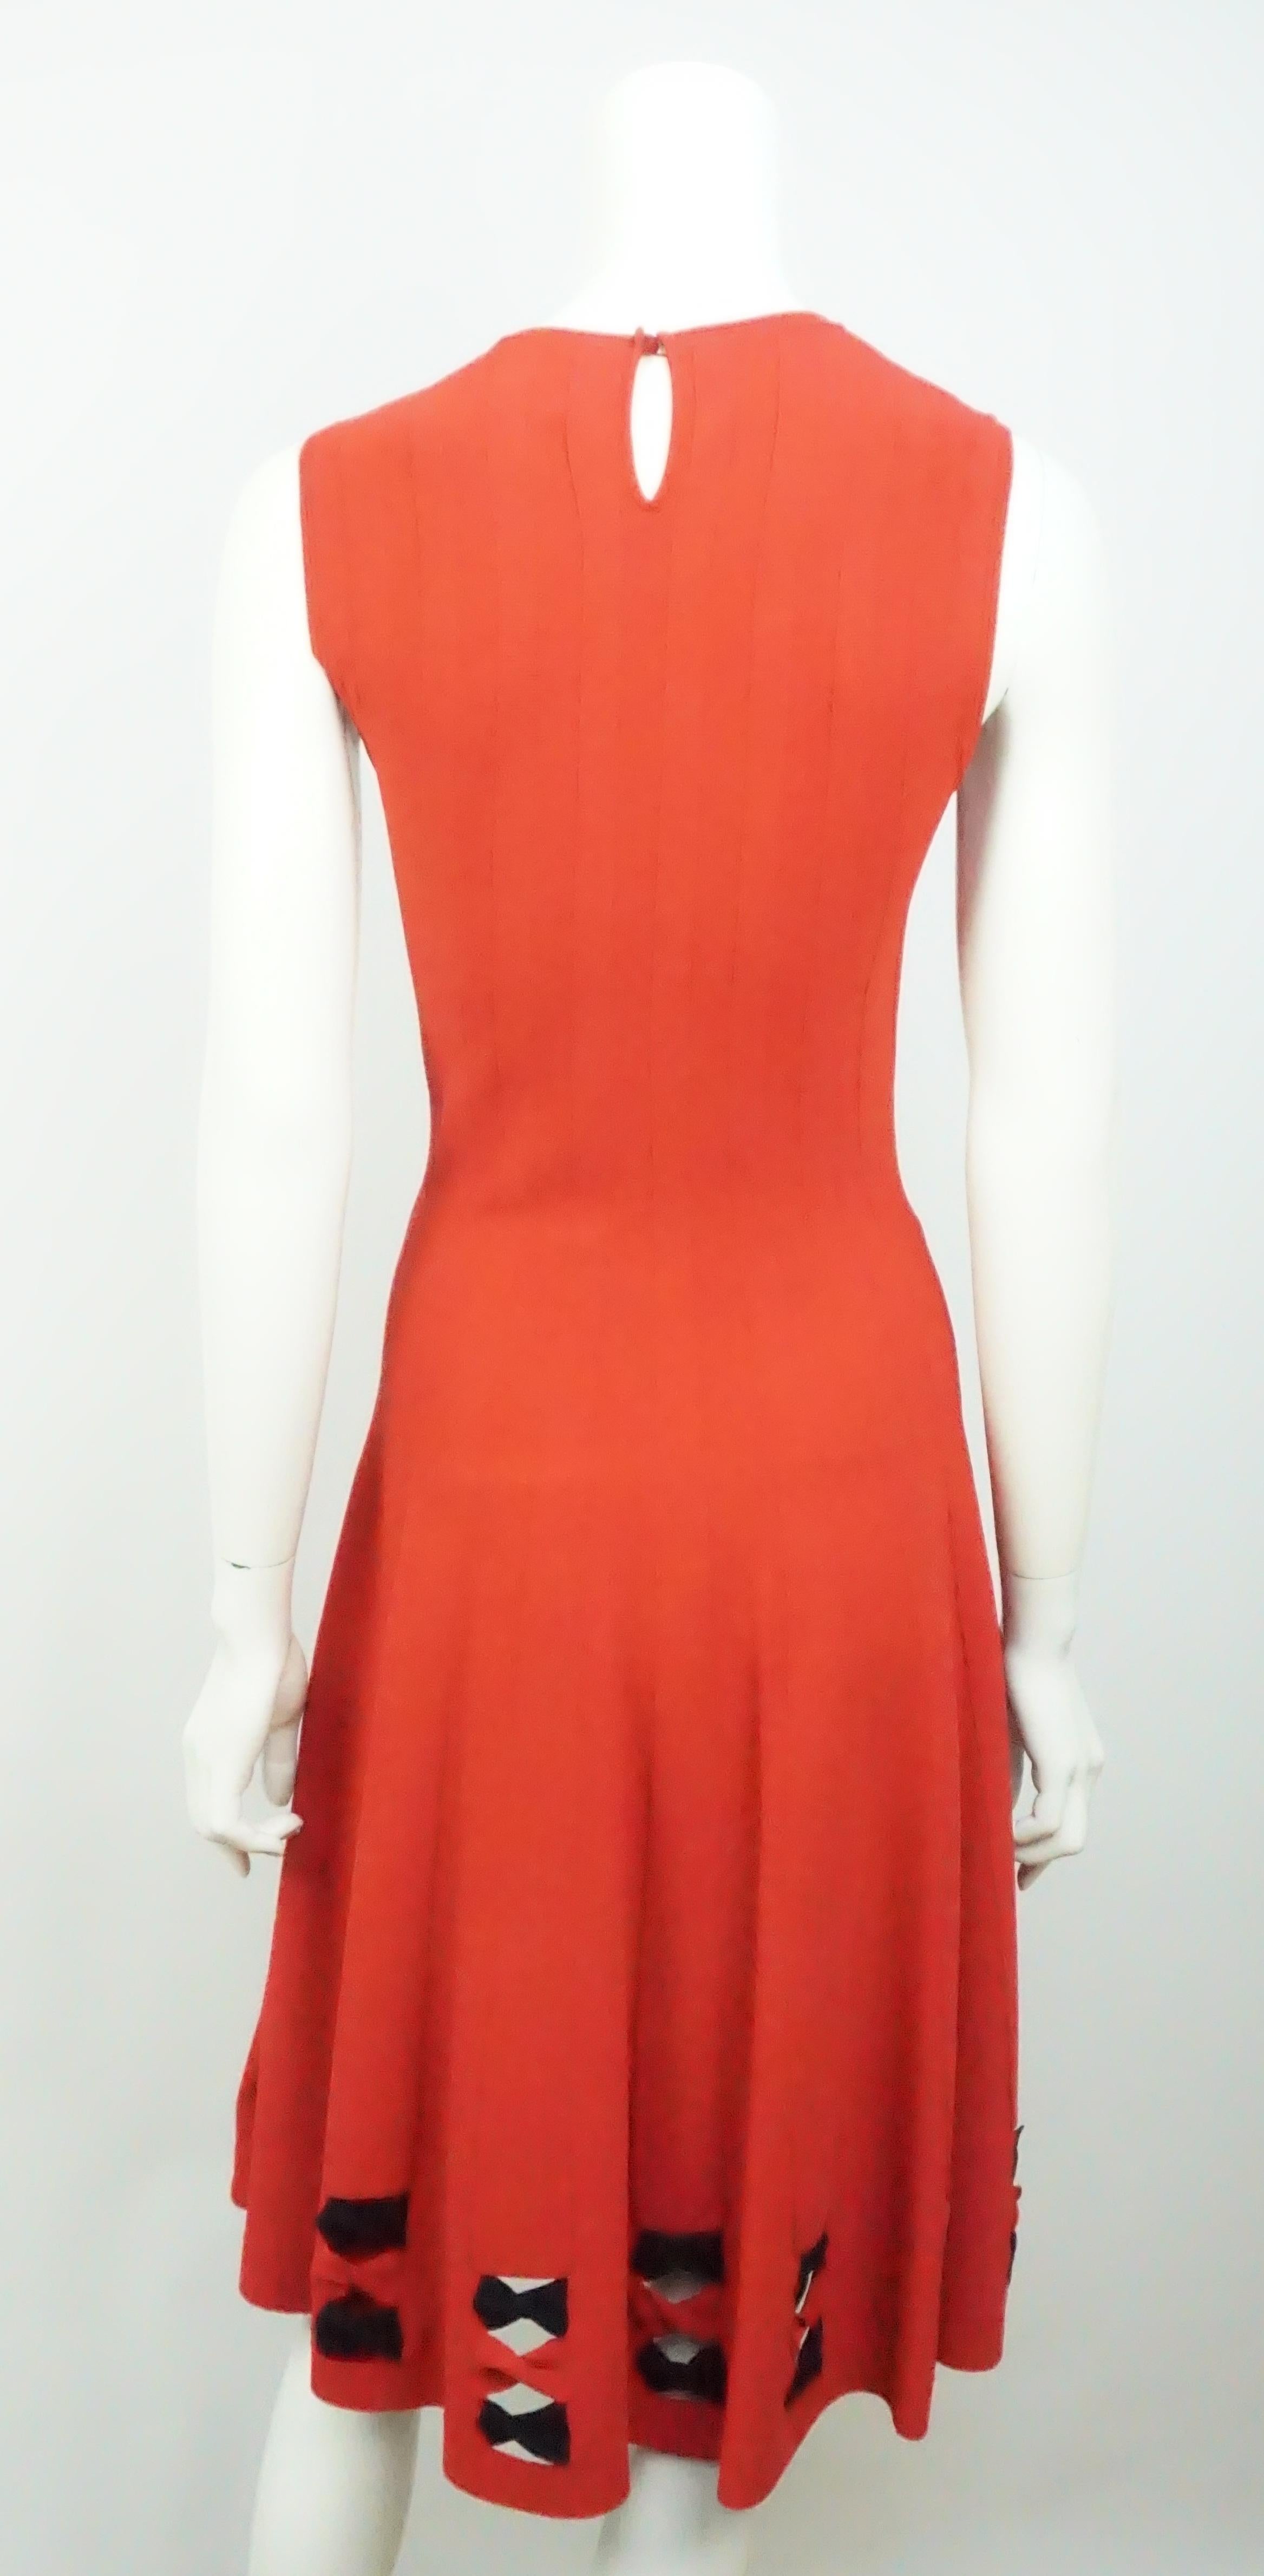 Women's Alexander McQueen Red Knit Sleeveless Dress - Small